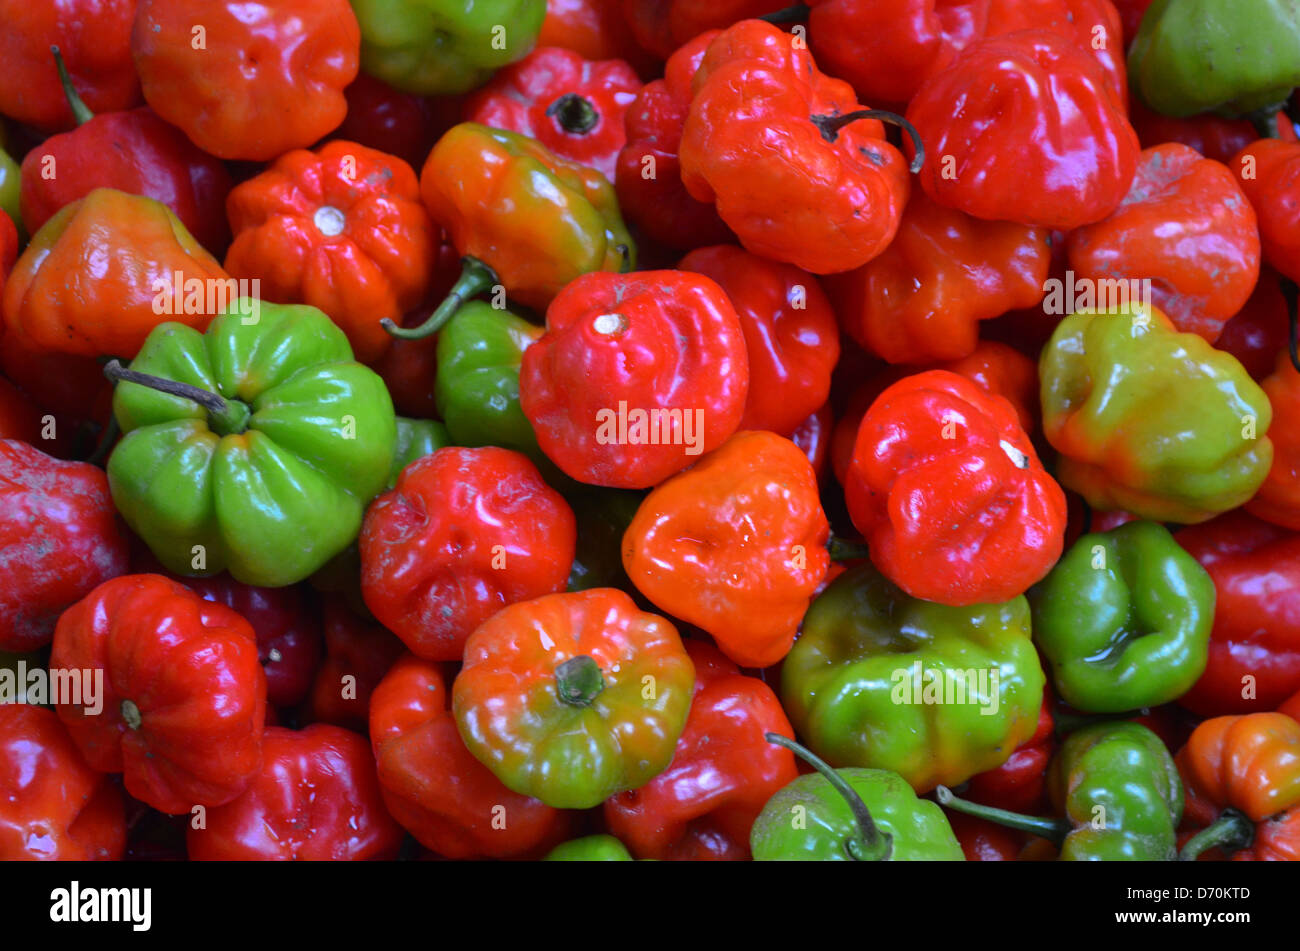 Aji Dulce - a sweet pepper, on sale in a market in Iquitos, Peru Stock Photo